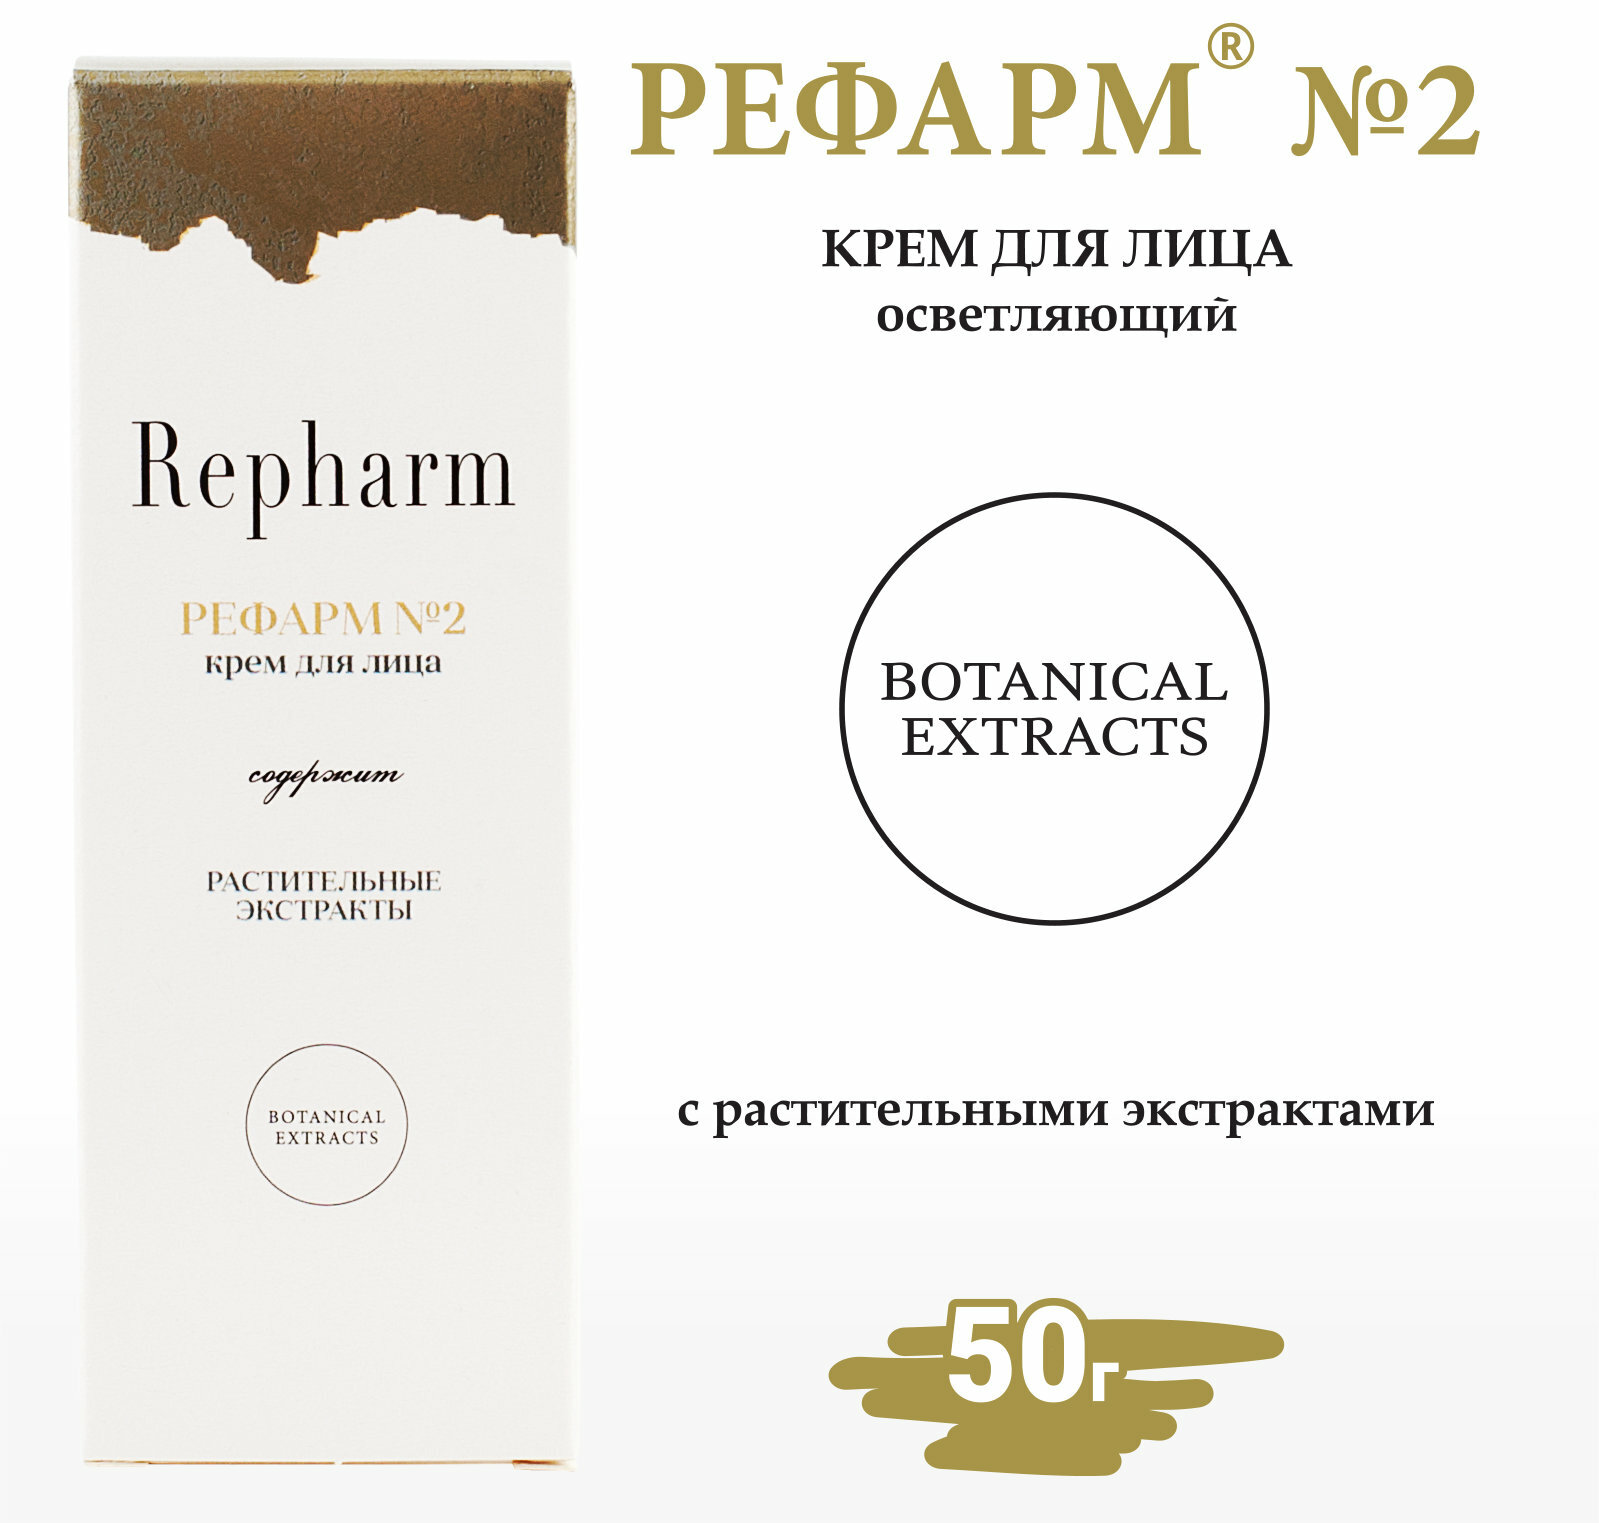 Крем для лица Repharm улучшает цвет лица (гиалуронат натрия) рефарм №2 50 г